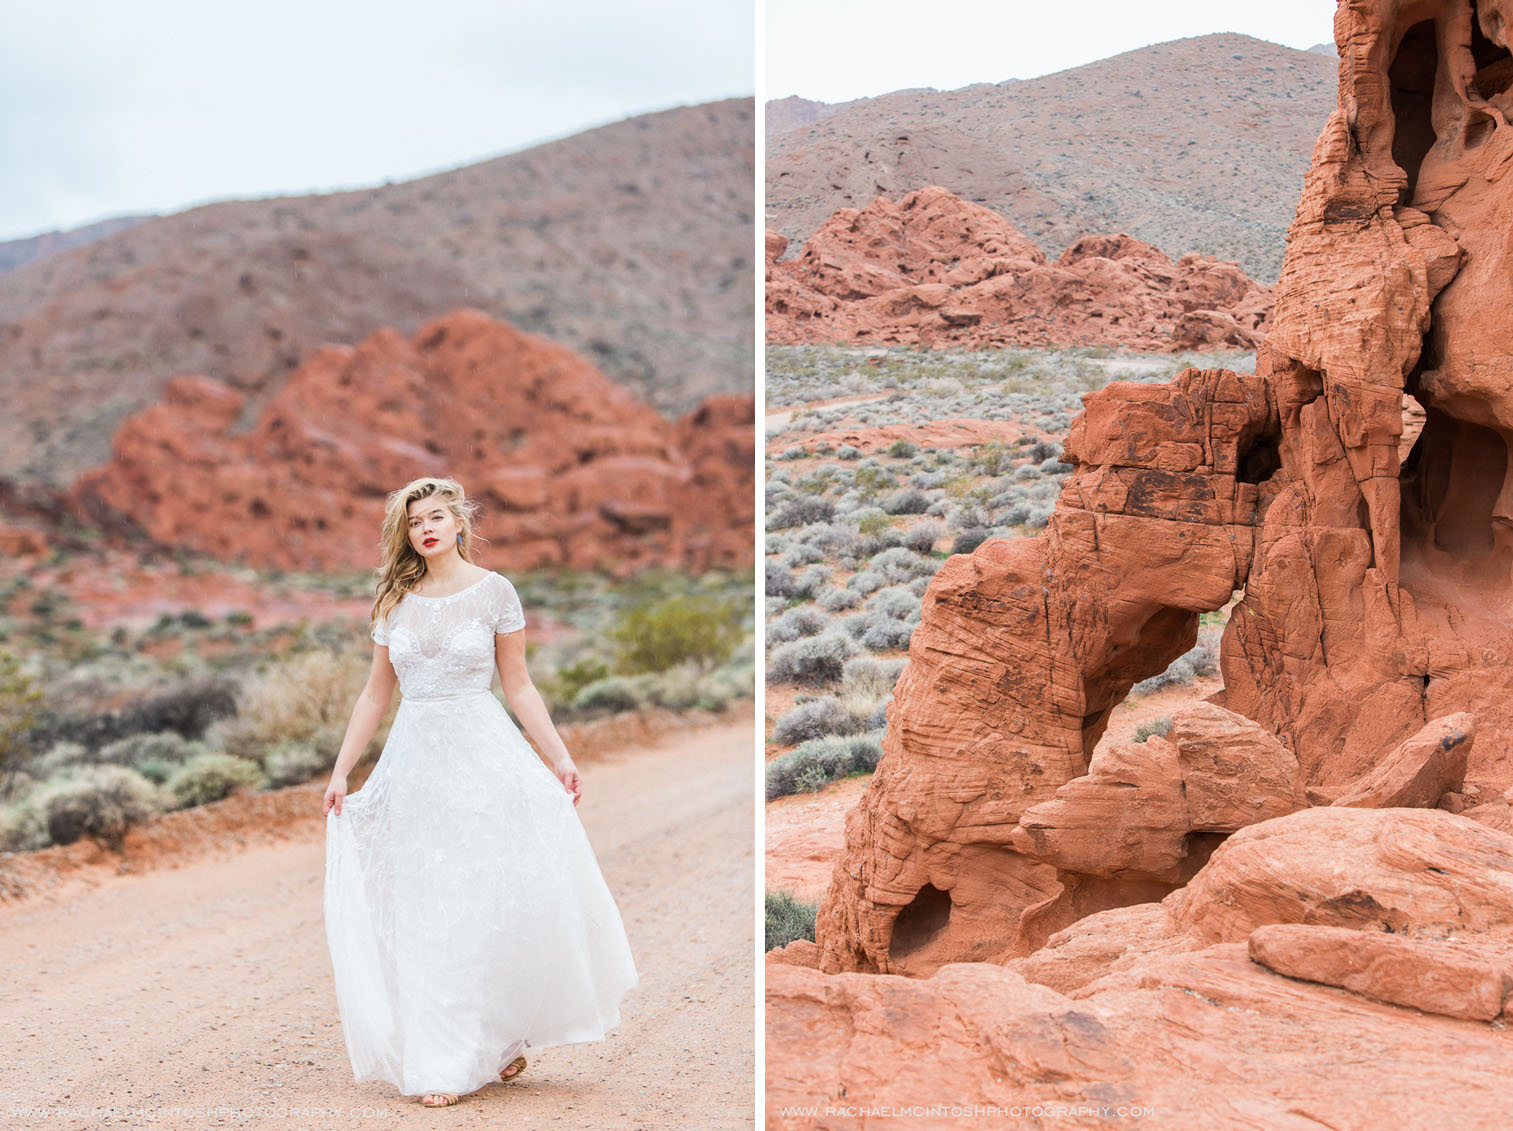 Khrystyana-styled-shoot-desert-wedding-31.jpg